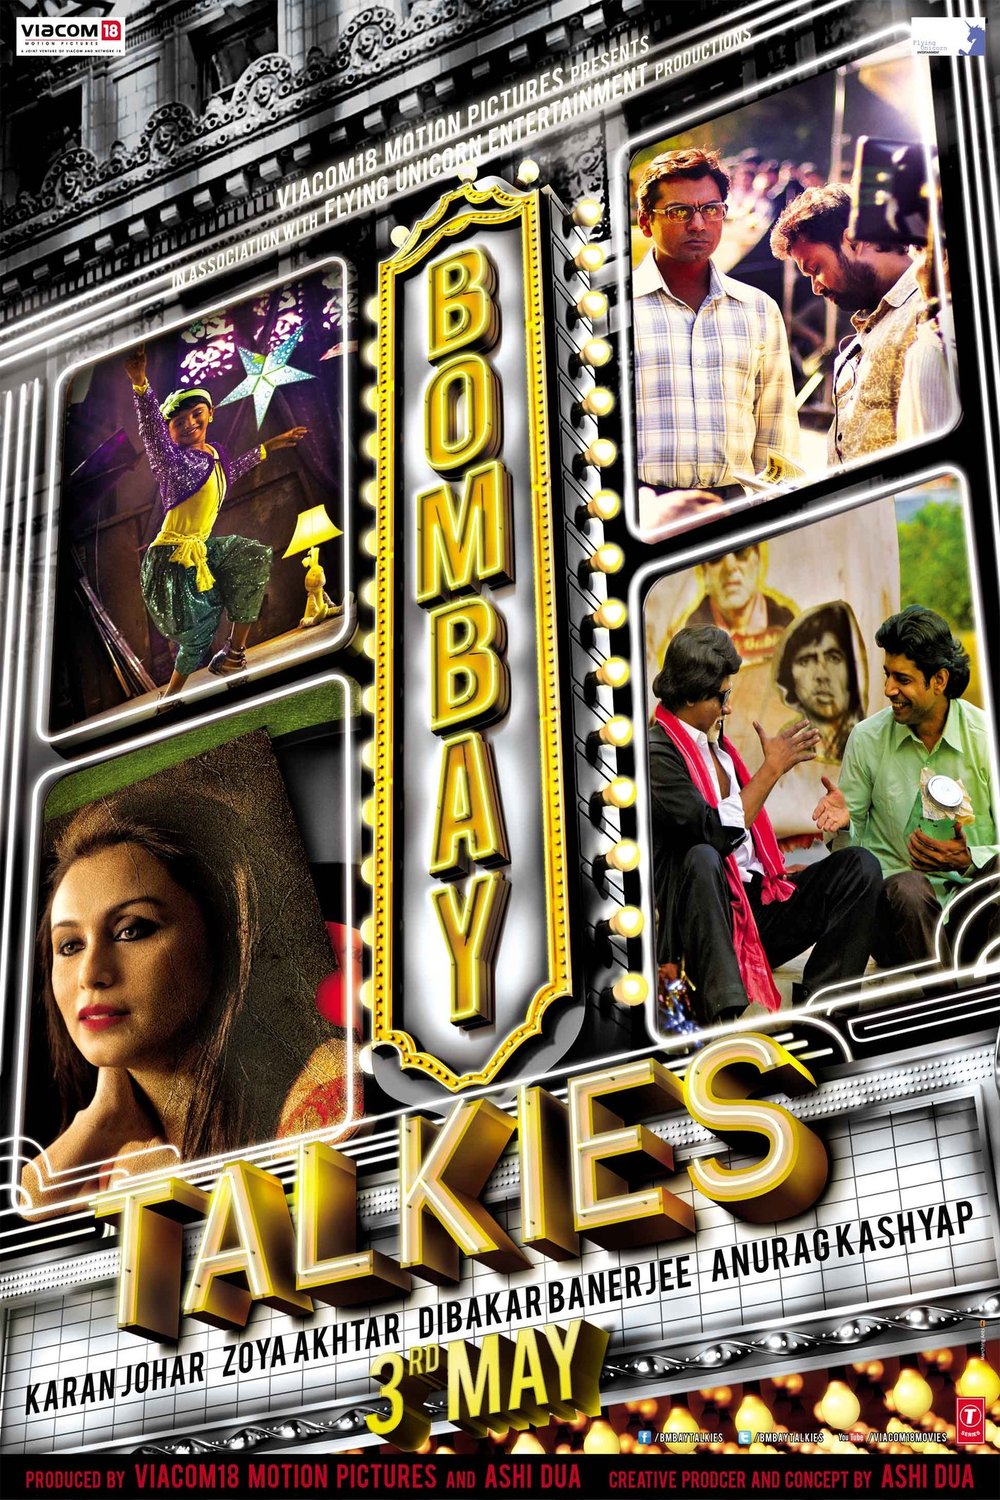 L'affiche originale du film Bombay Talkies en Hindi